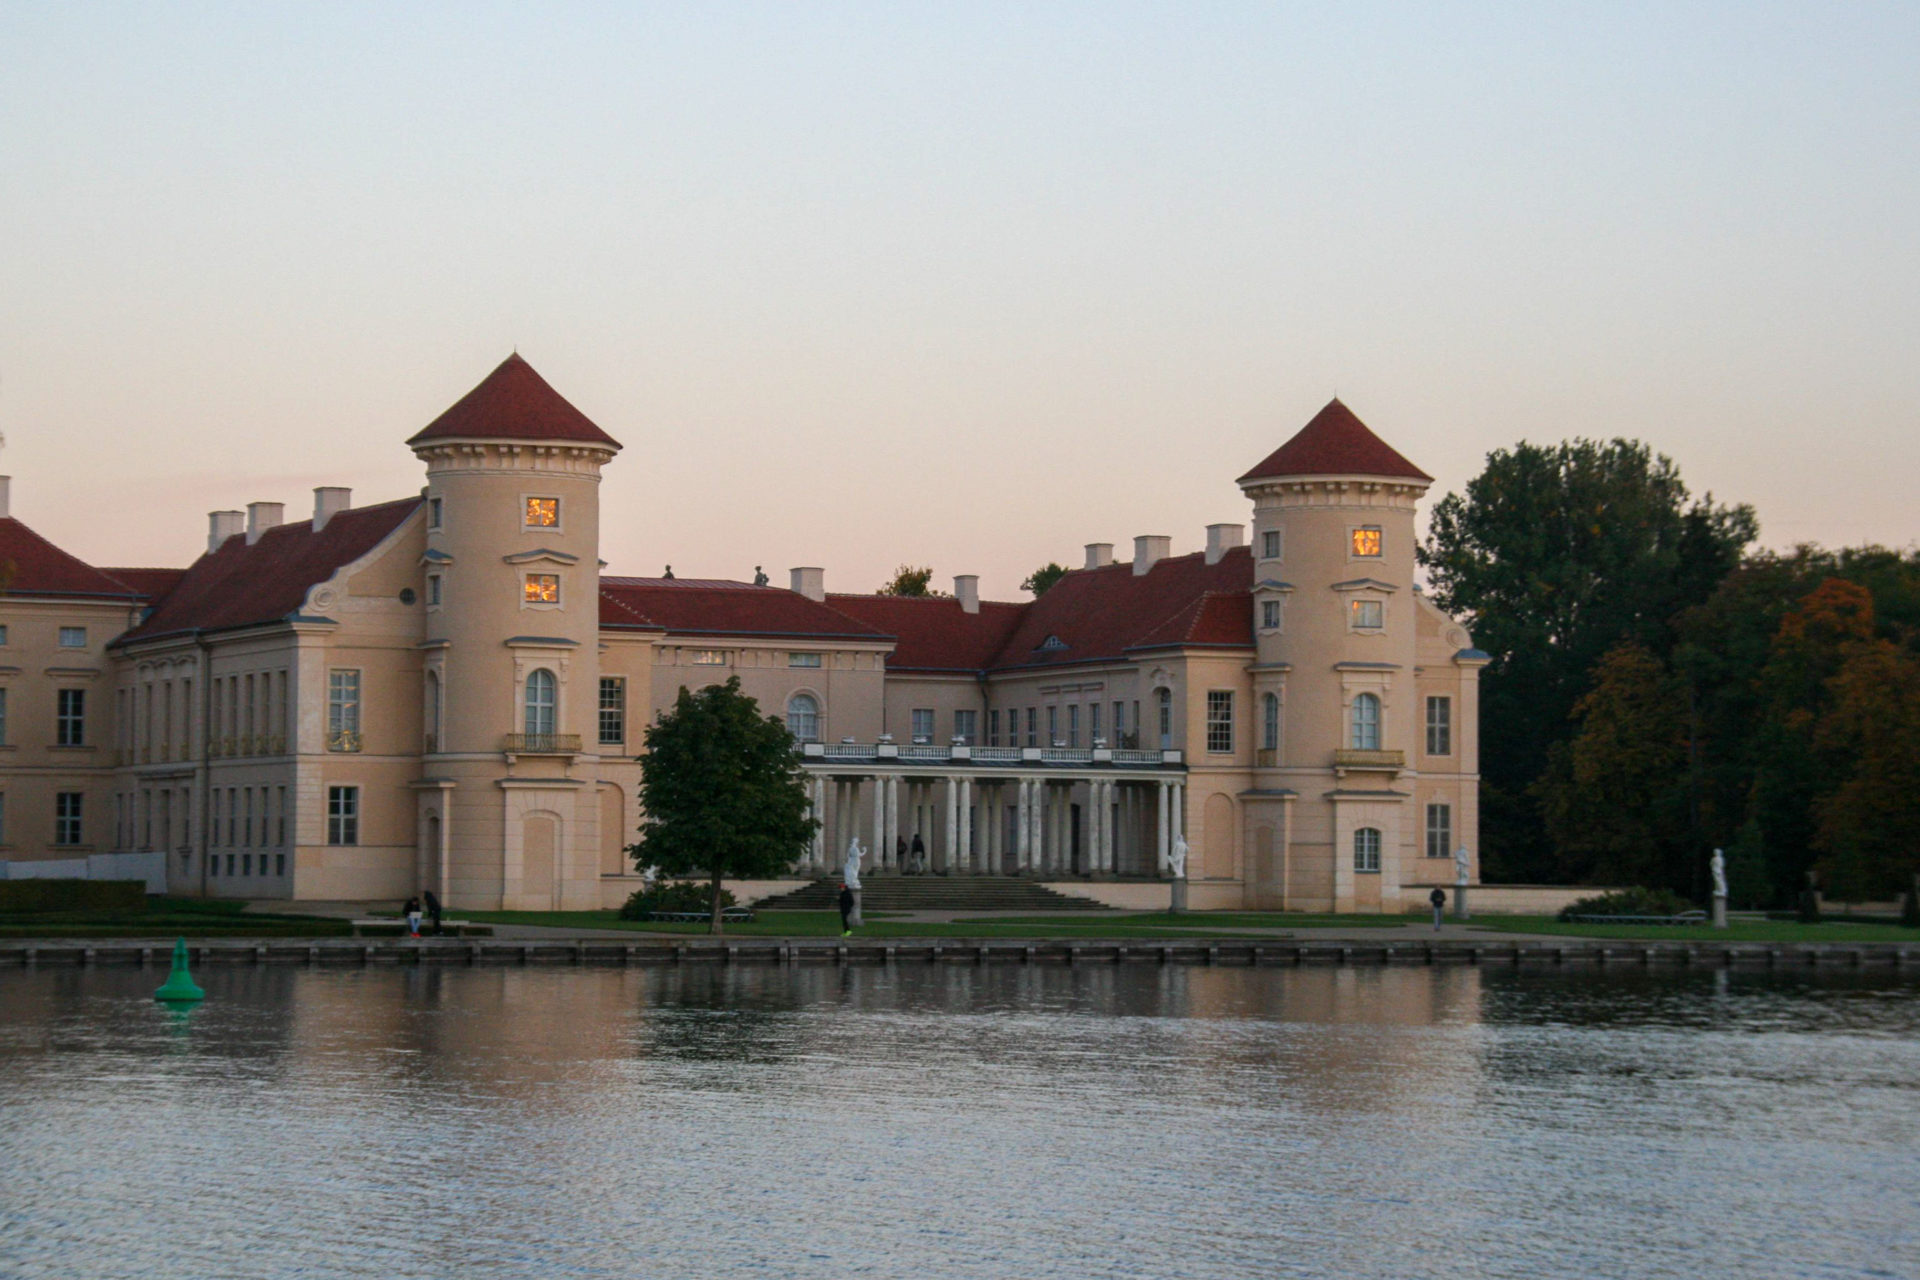 Schloss Rheinberg in Mecklenburg im Abendlicht